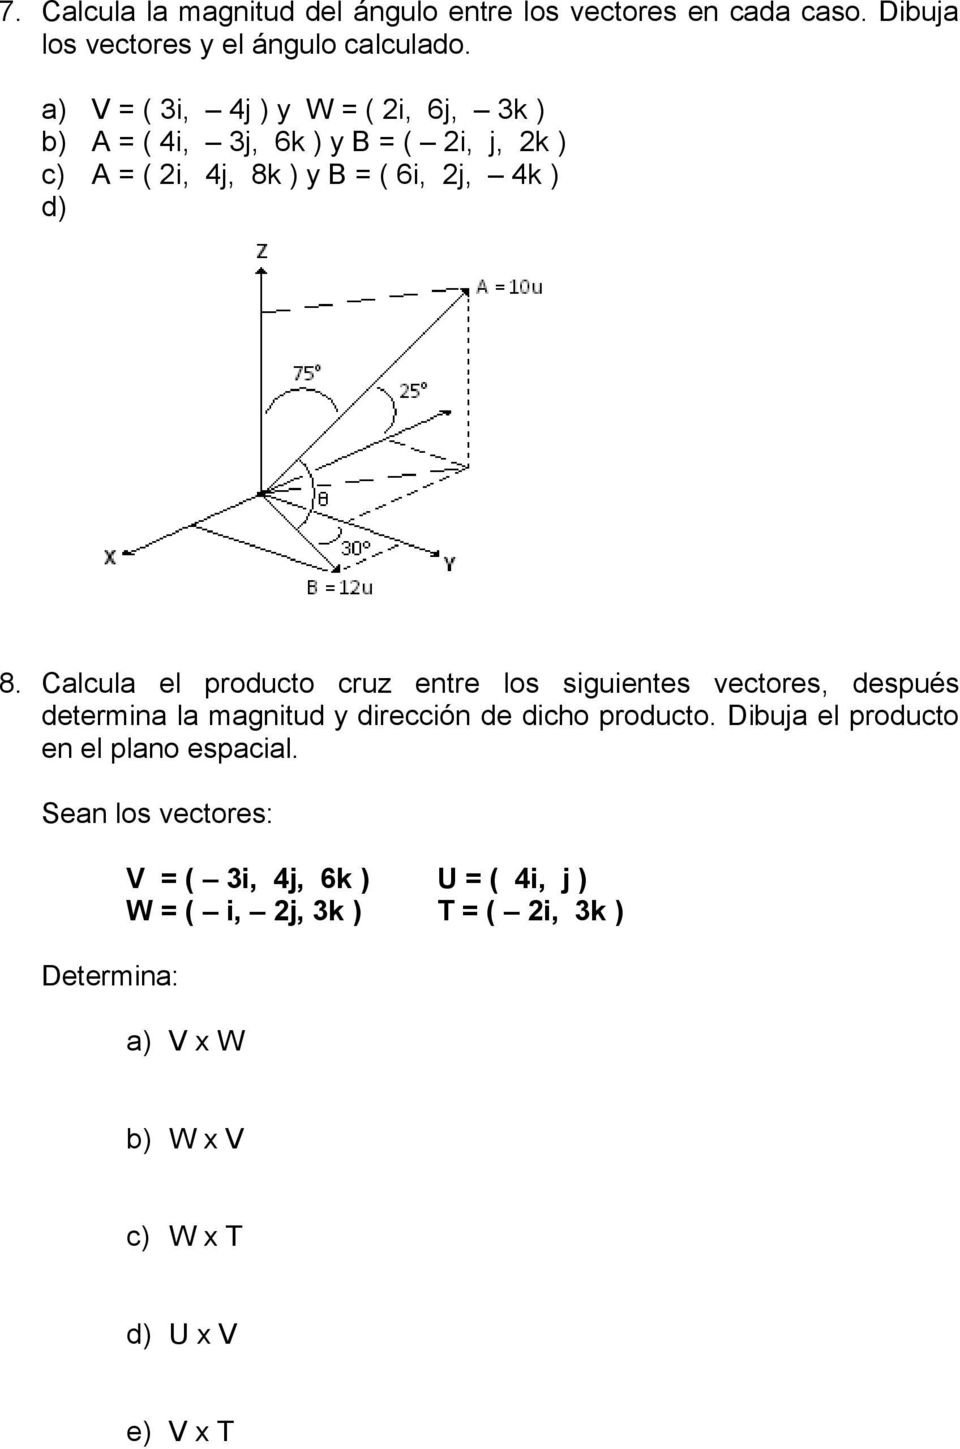 Calcula el producto cruz entre los siguientes vectores, después determina la magnitud y dirección de dicho producto.